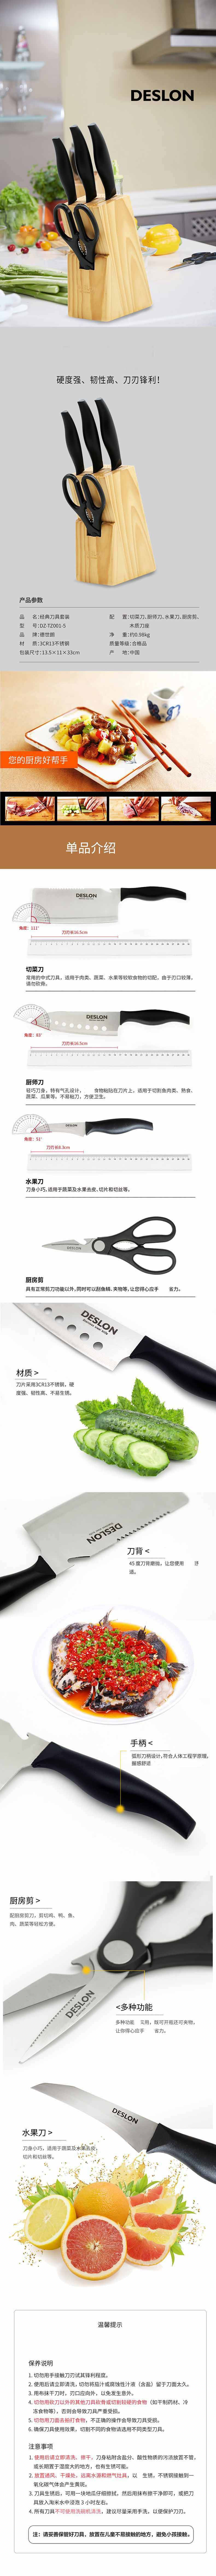 德世朗 DZ-TZ001-5 经典刀具套装 多功能剪刀 菜刀 水果刀